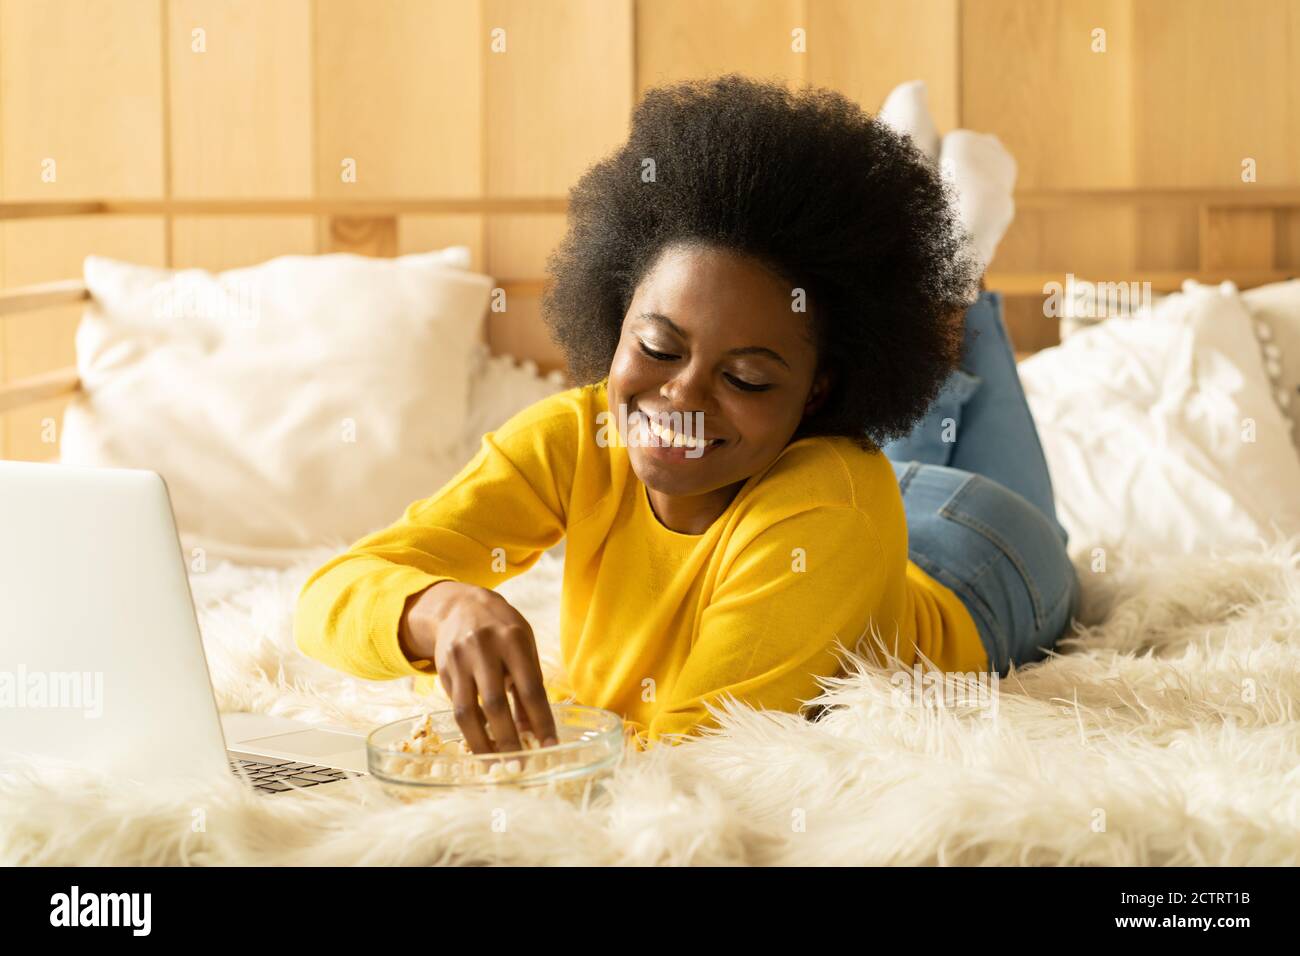 Bonne femme afro-américaine dans un chandail jaune relaxant, en train de manger du pop-corn tout en regardant un film sur ordinateur portable, en parlant sur chat vidéo, allongé au lit. Reposez-vous Banque D'Images